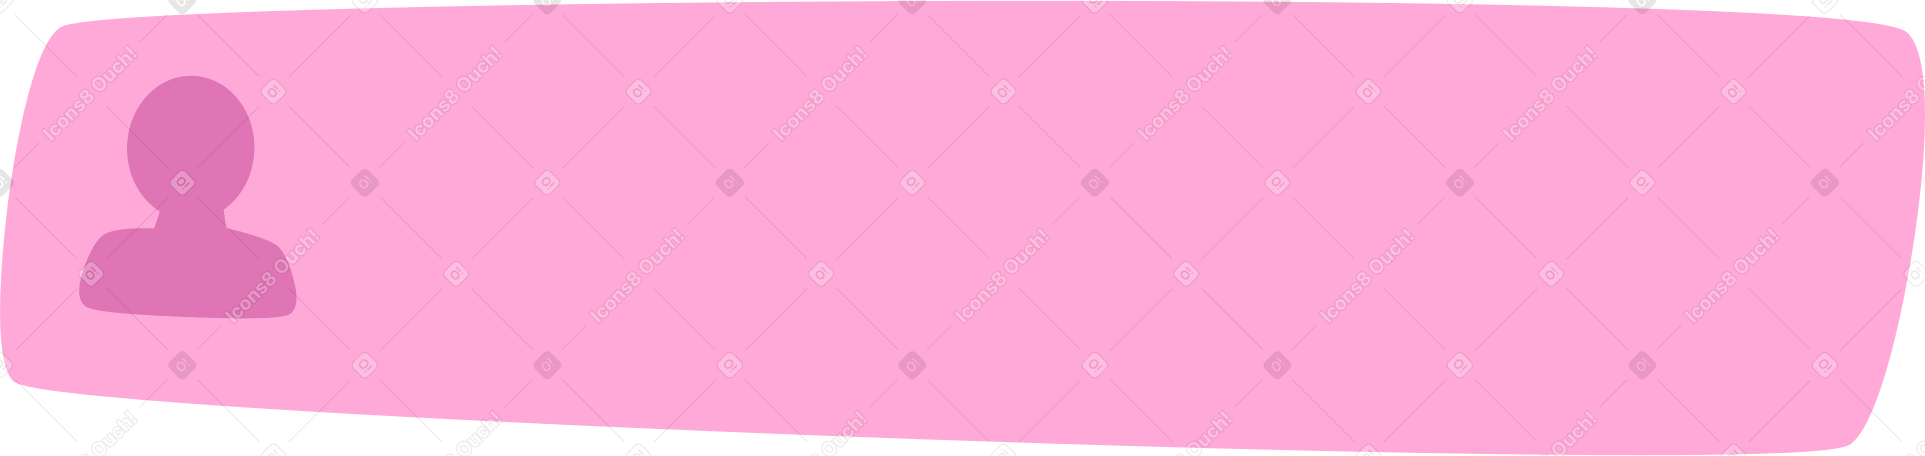 pink login bar Illustration in PNG, SVG